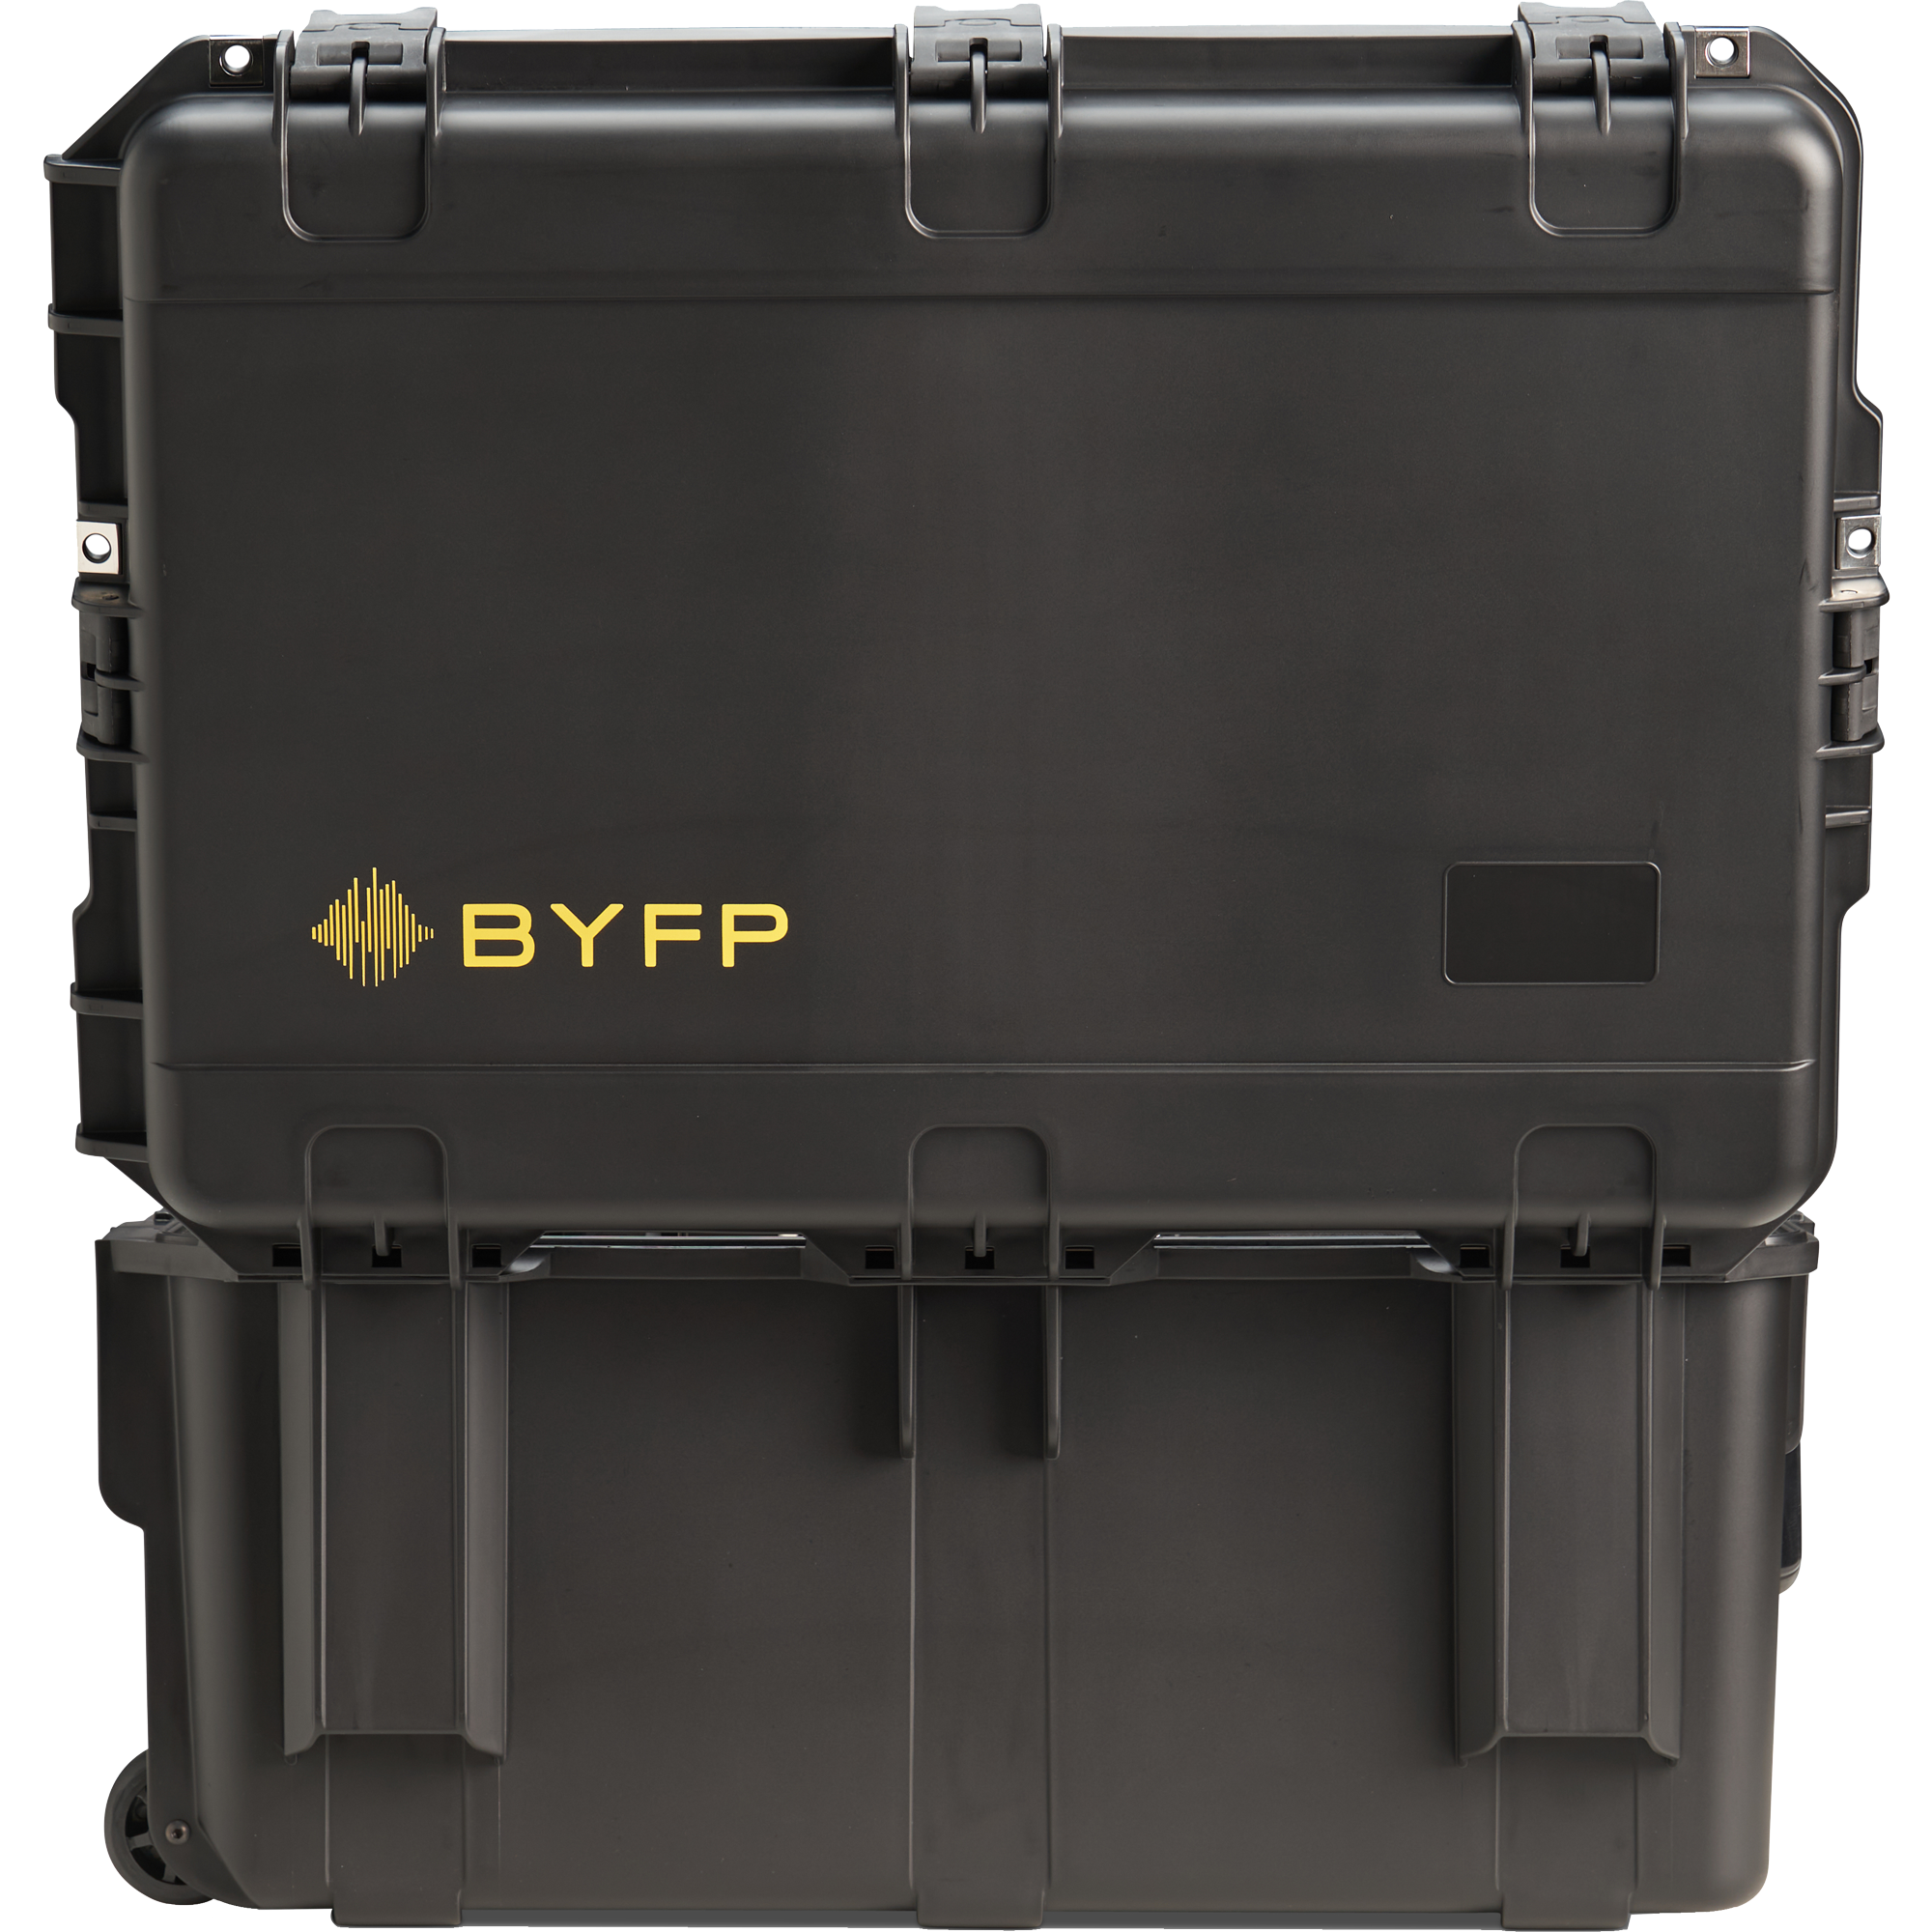 BYFP ipCase for 6x Martin Ellipsoidal Lens